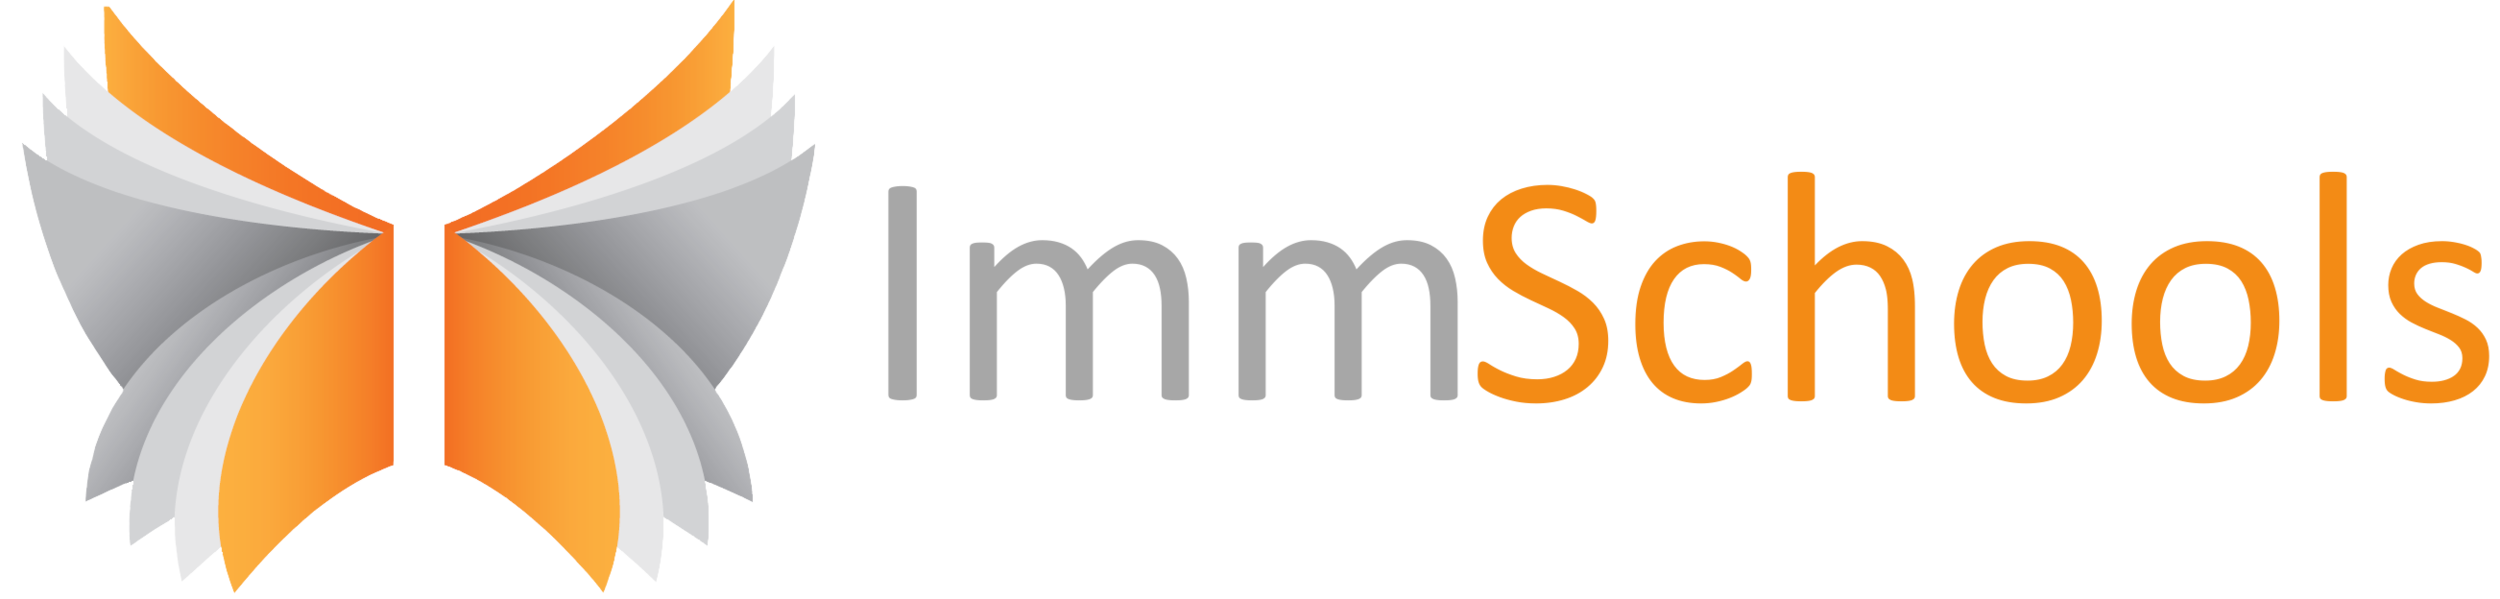 ImmSchools logo.png